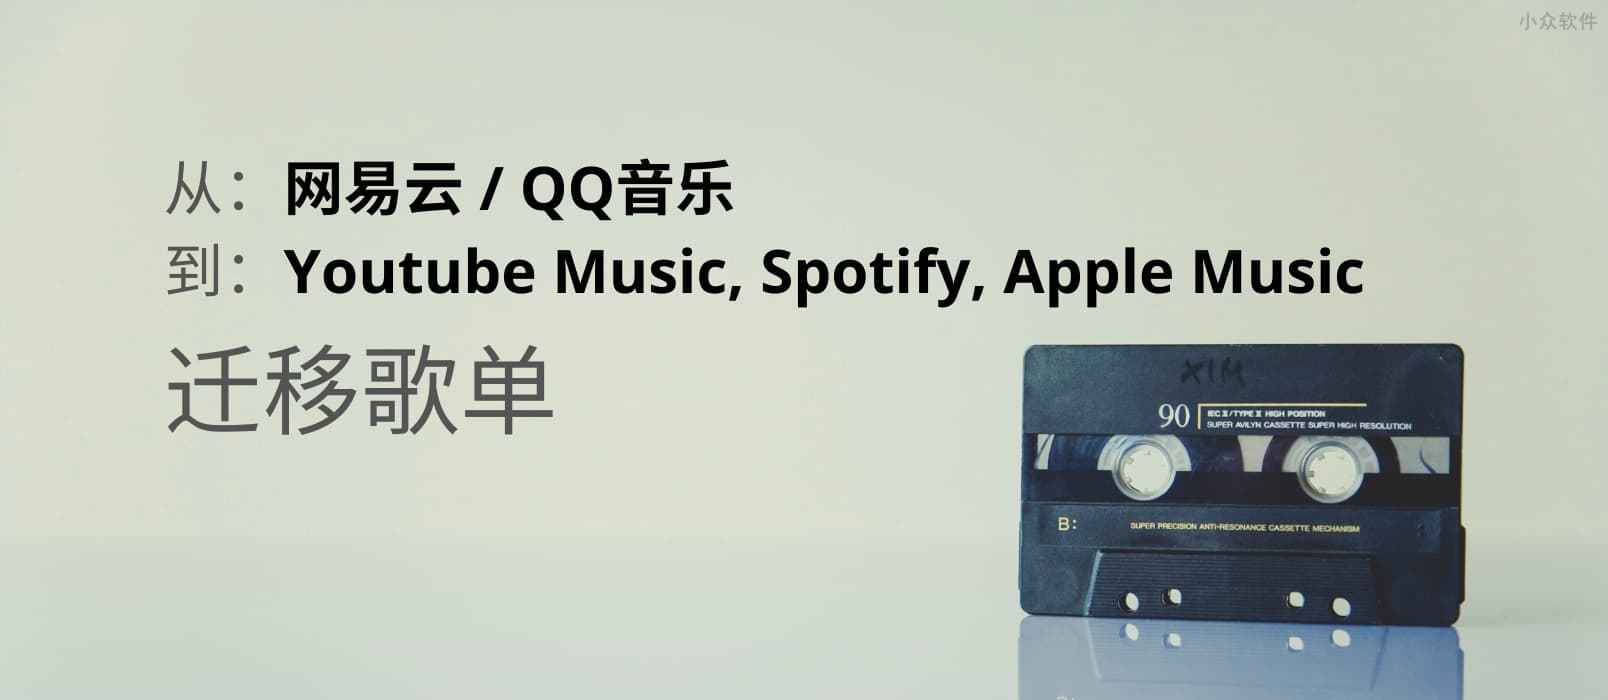 迁移网易云音乐、 QQ音乐歌单到 Youtube Music, Spotify, Apple Music